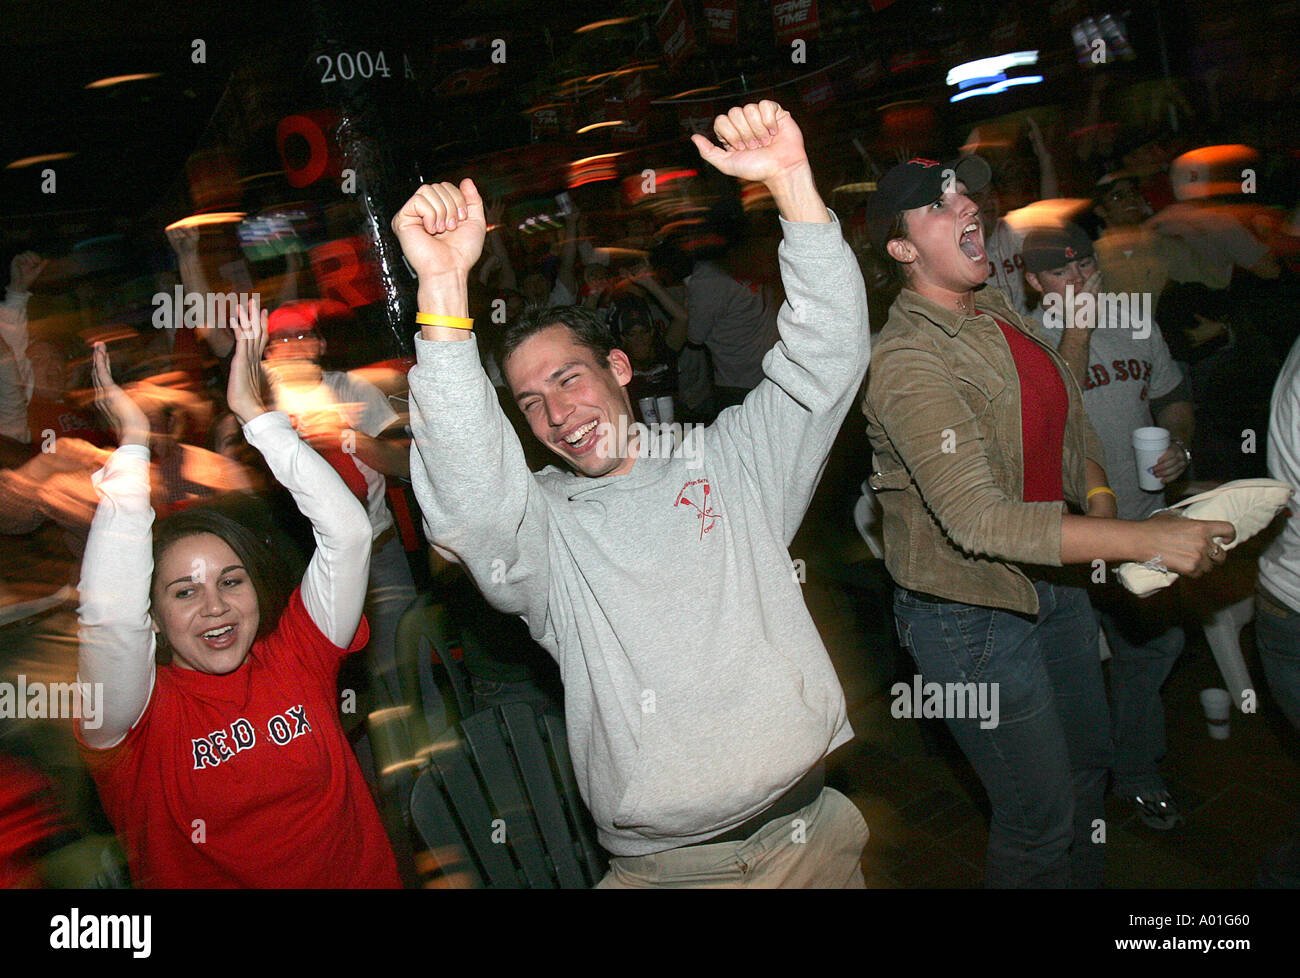 Rowdy Red Sox Baseball fans célébrer une victoire Banque D'Images